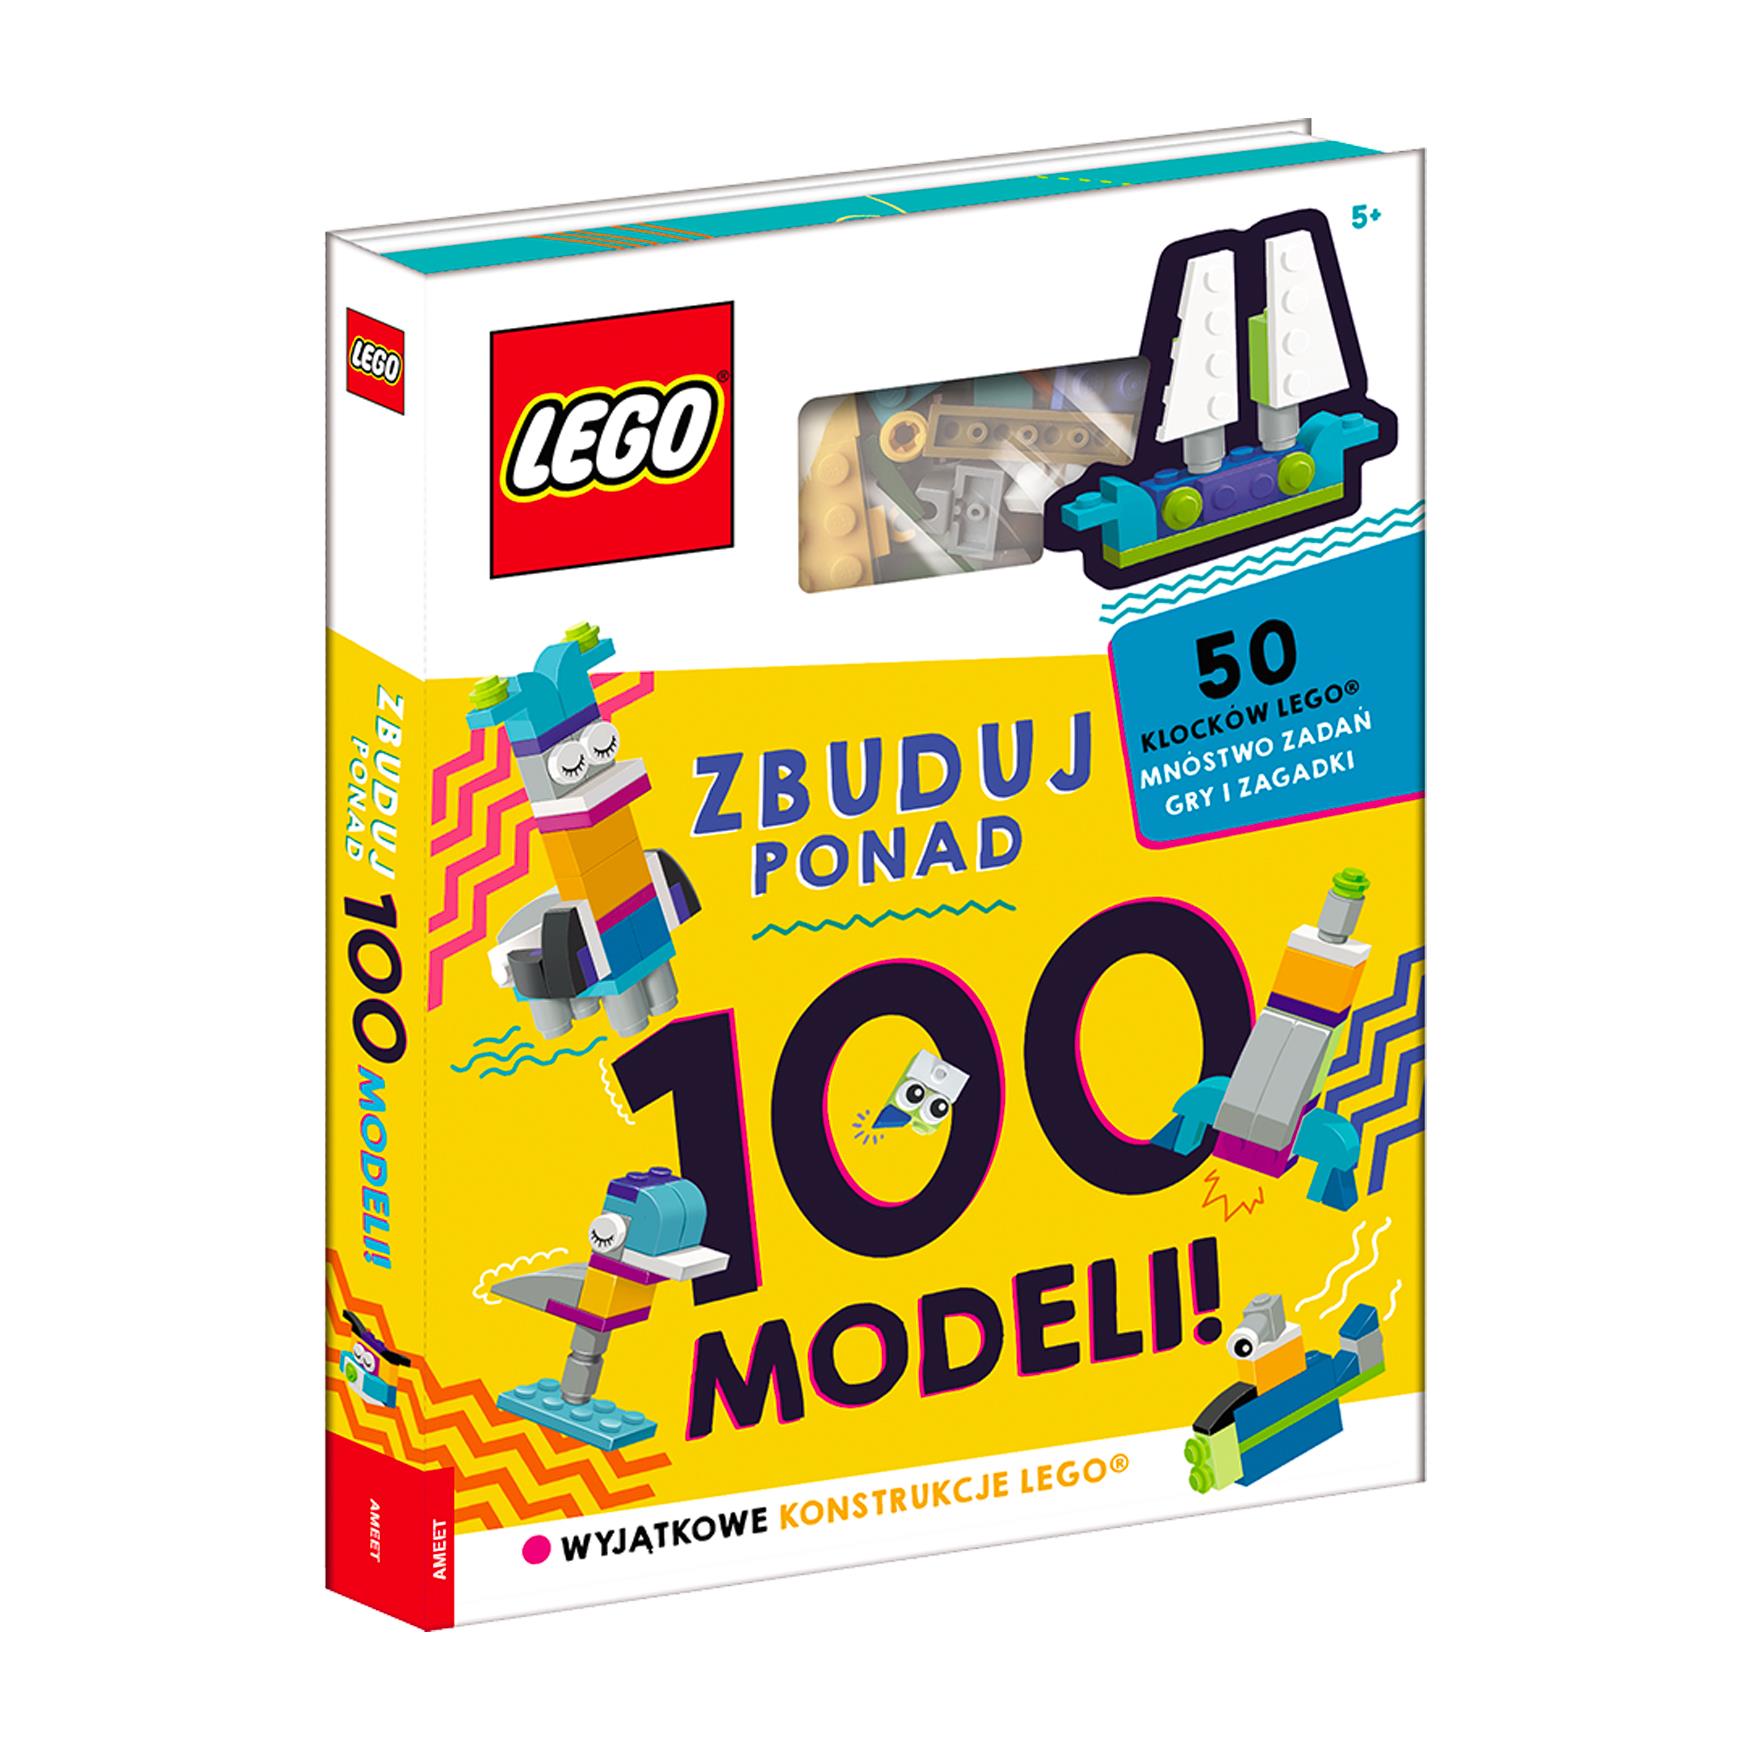 LEGO® Iconic. Zbuduj ponad 100 modeli!